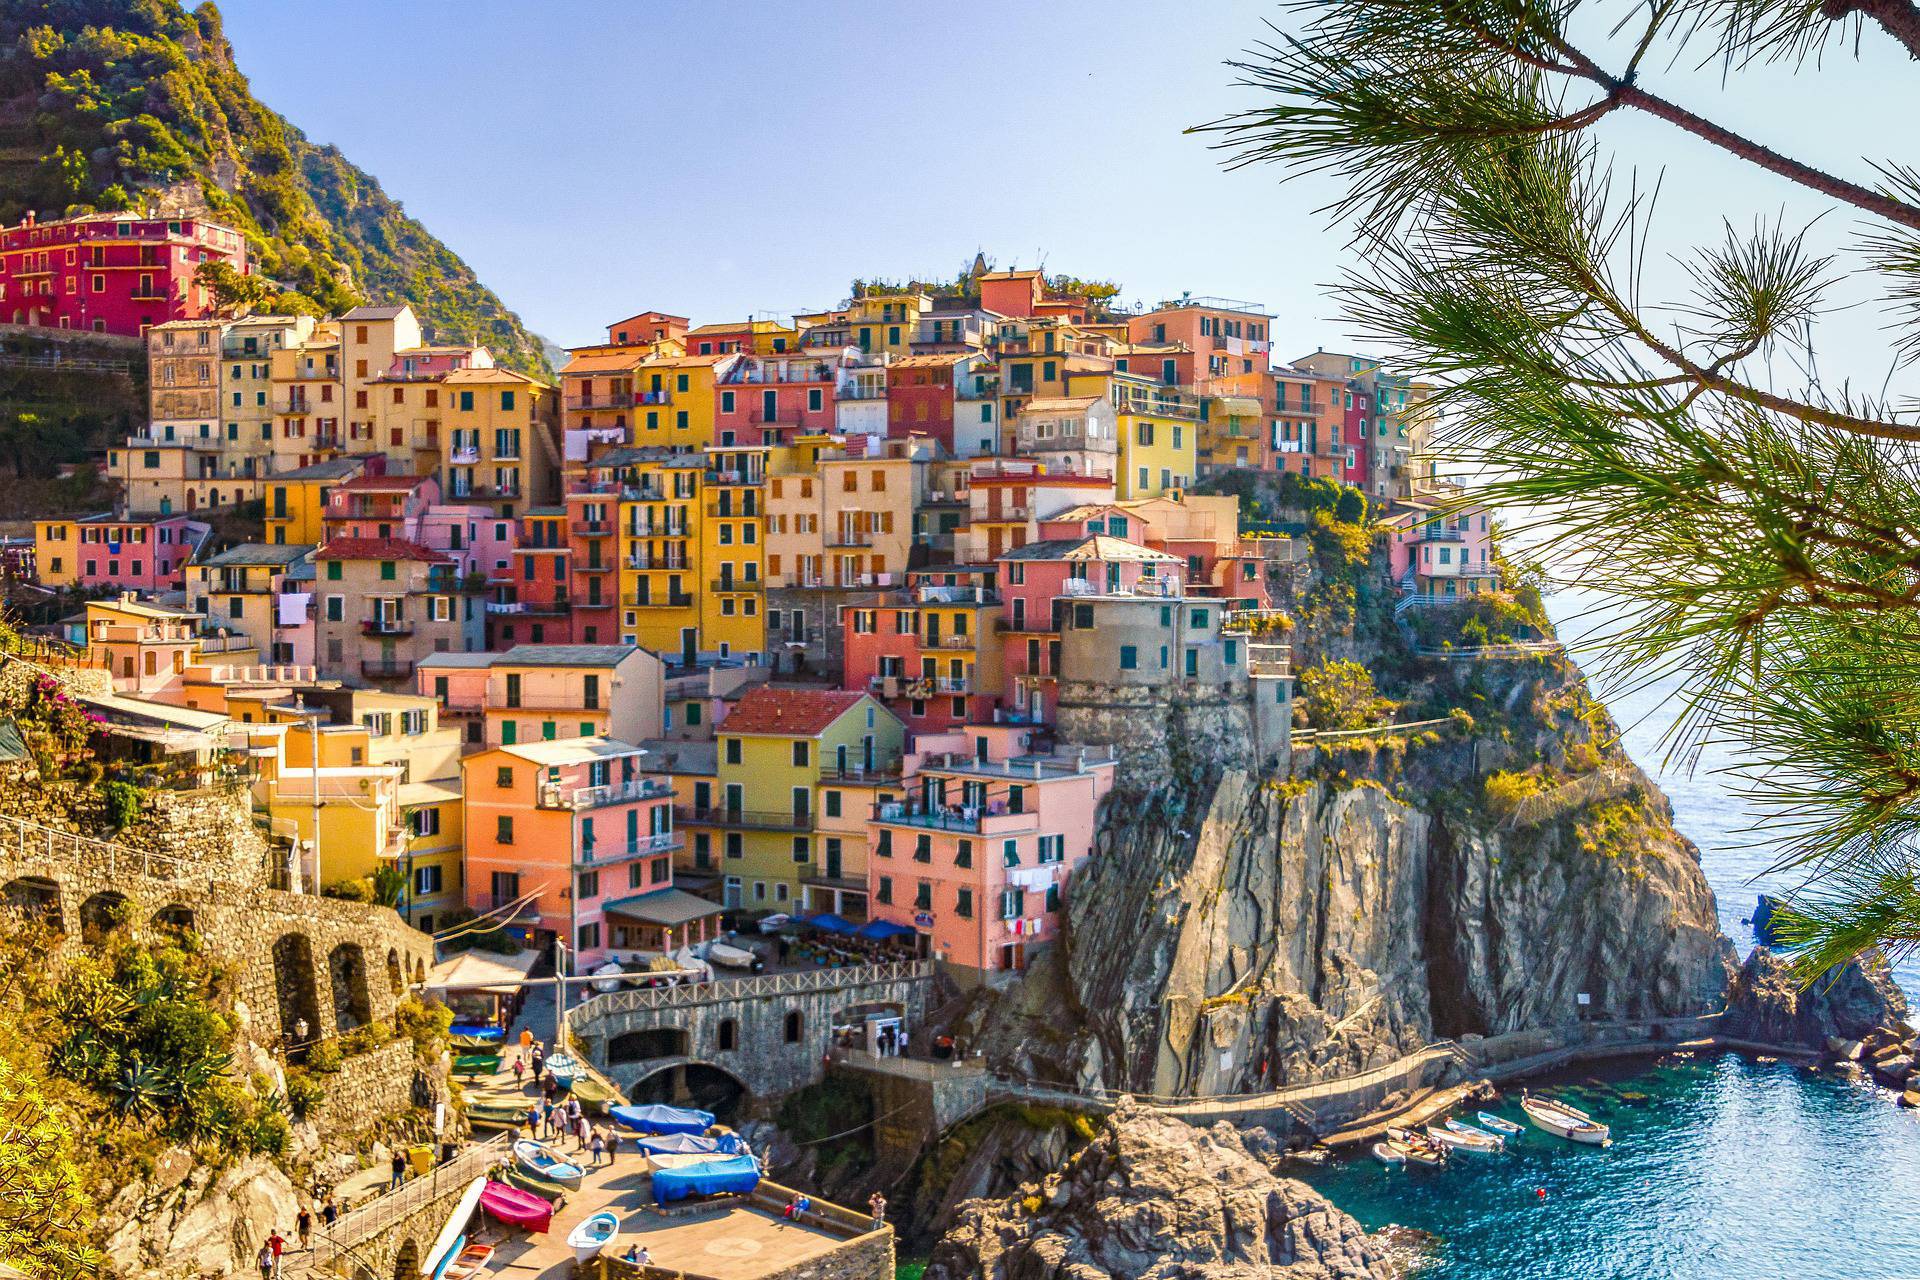 Italy tourism